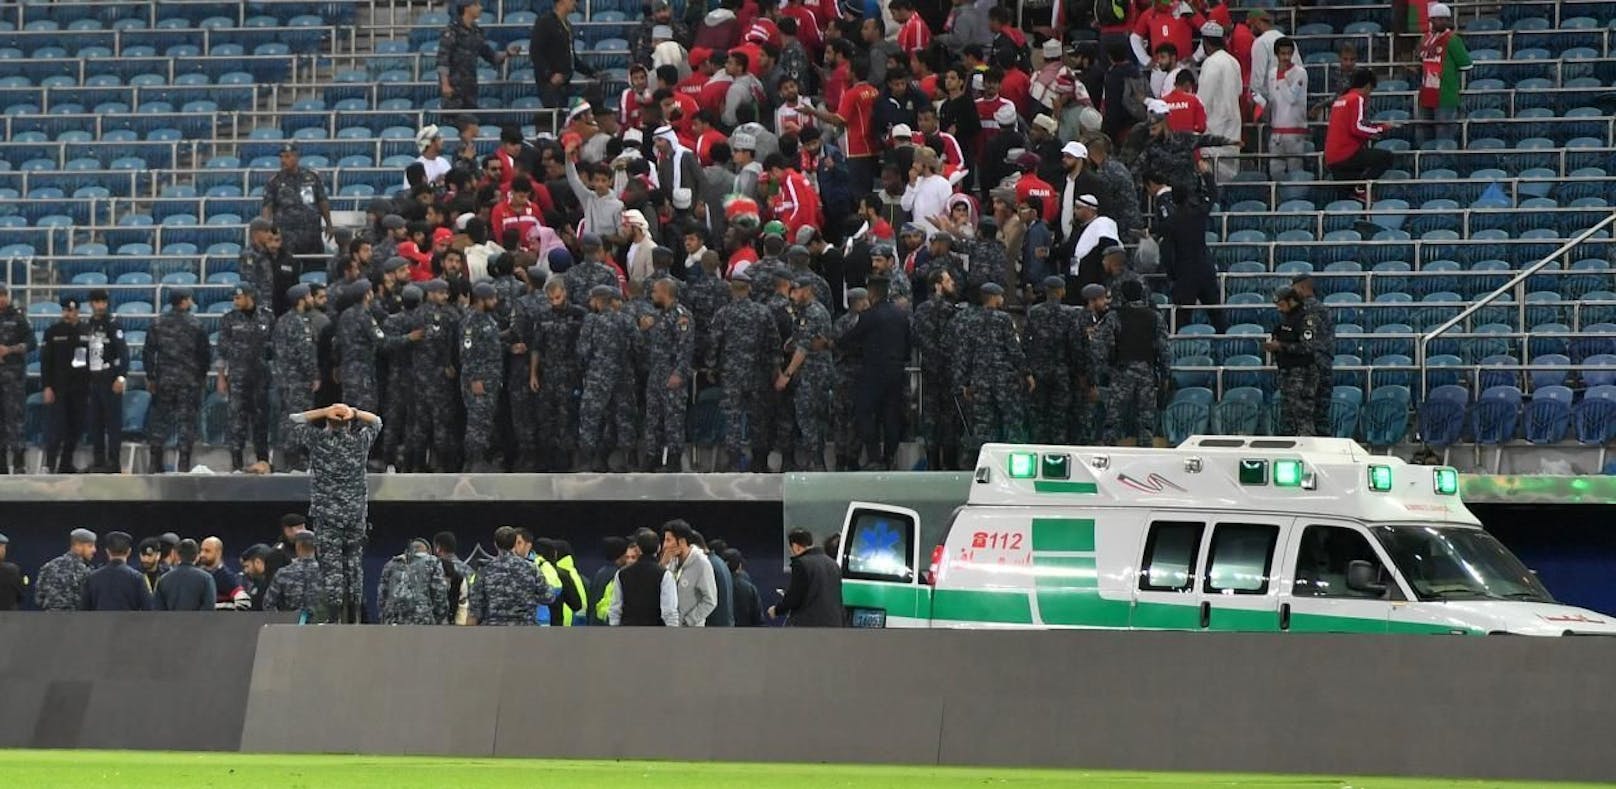 40 Fußballfans bei Unfall in Stadion verletzt